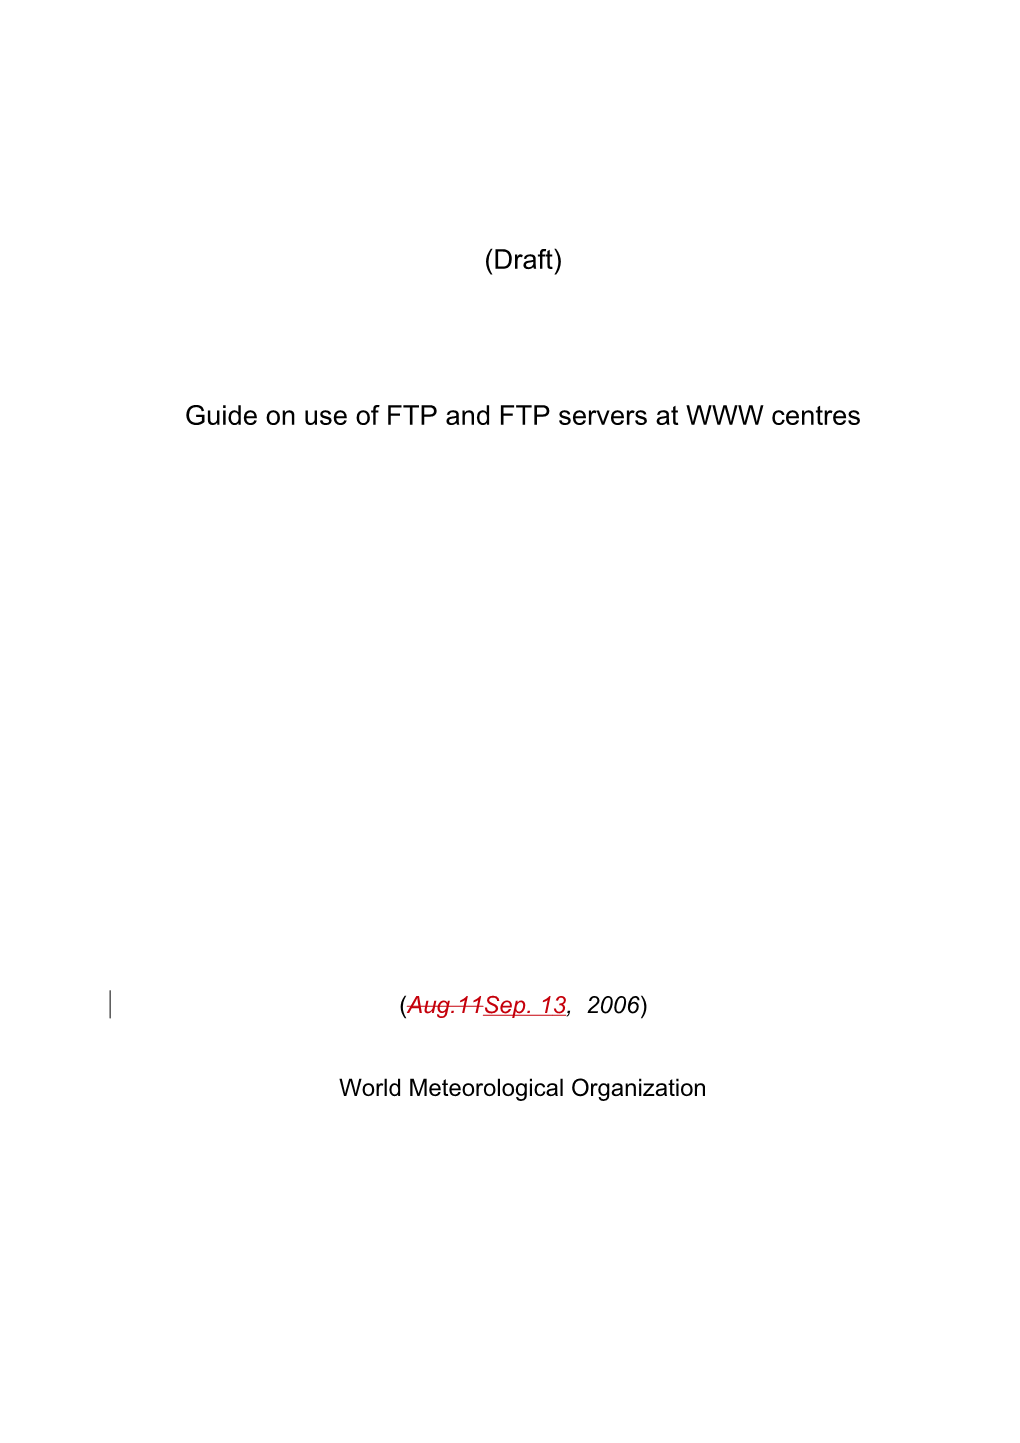 Guide on Establishing an Ftp Server